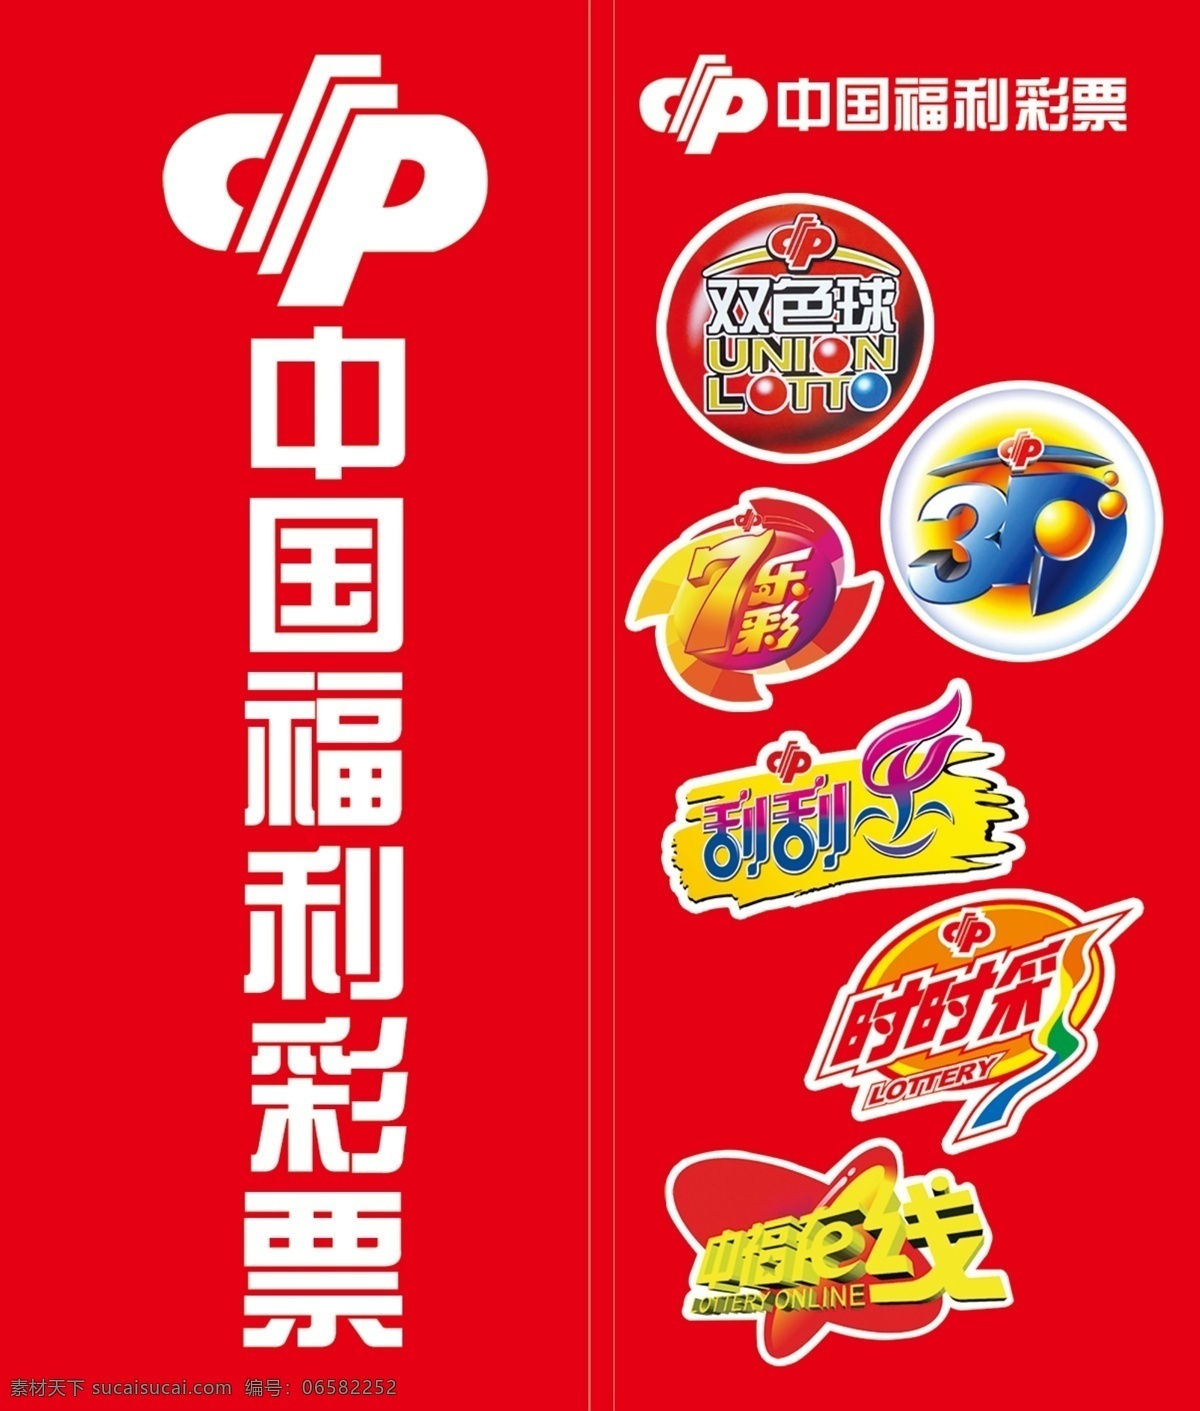 中国福利彩票 双色球 七乐彩 刮刮乐 3d游戏 时时彩 中福在线 文化艺术 传统文化